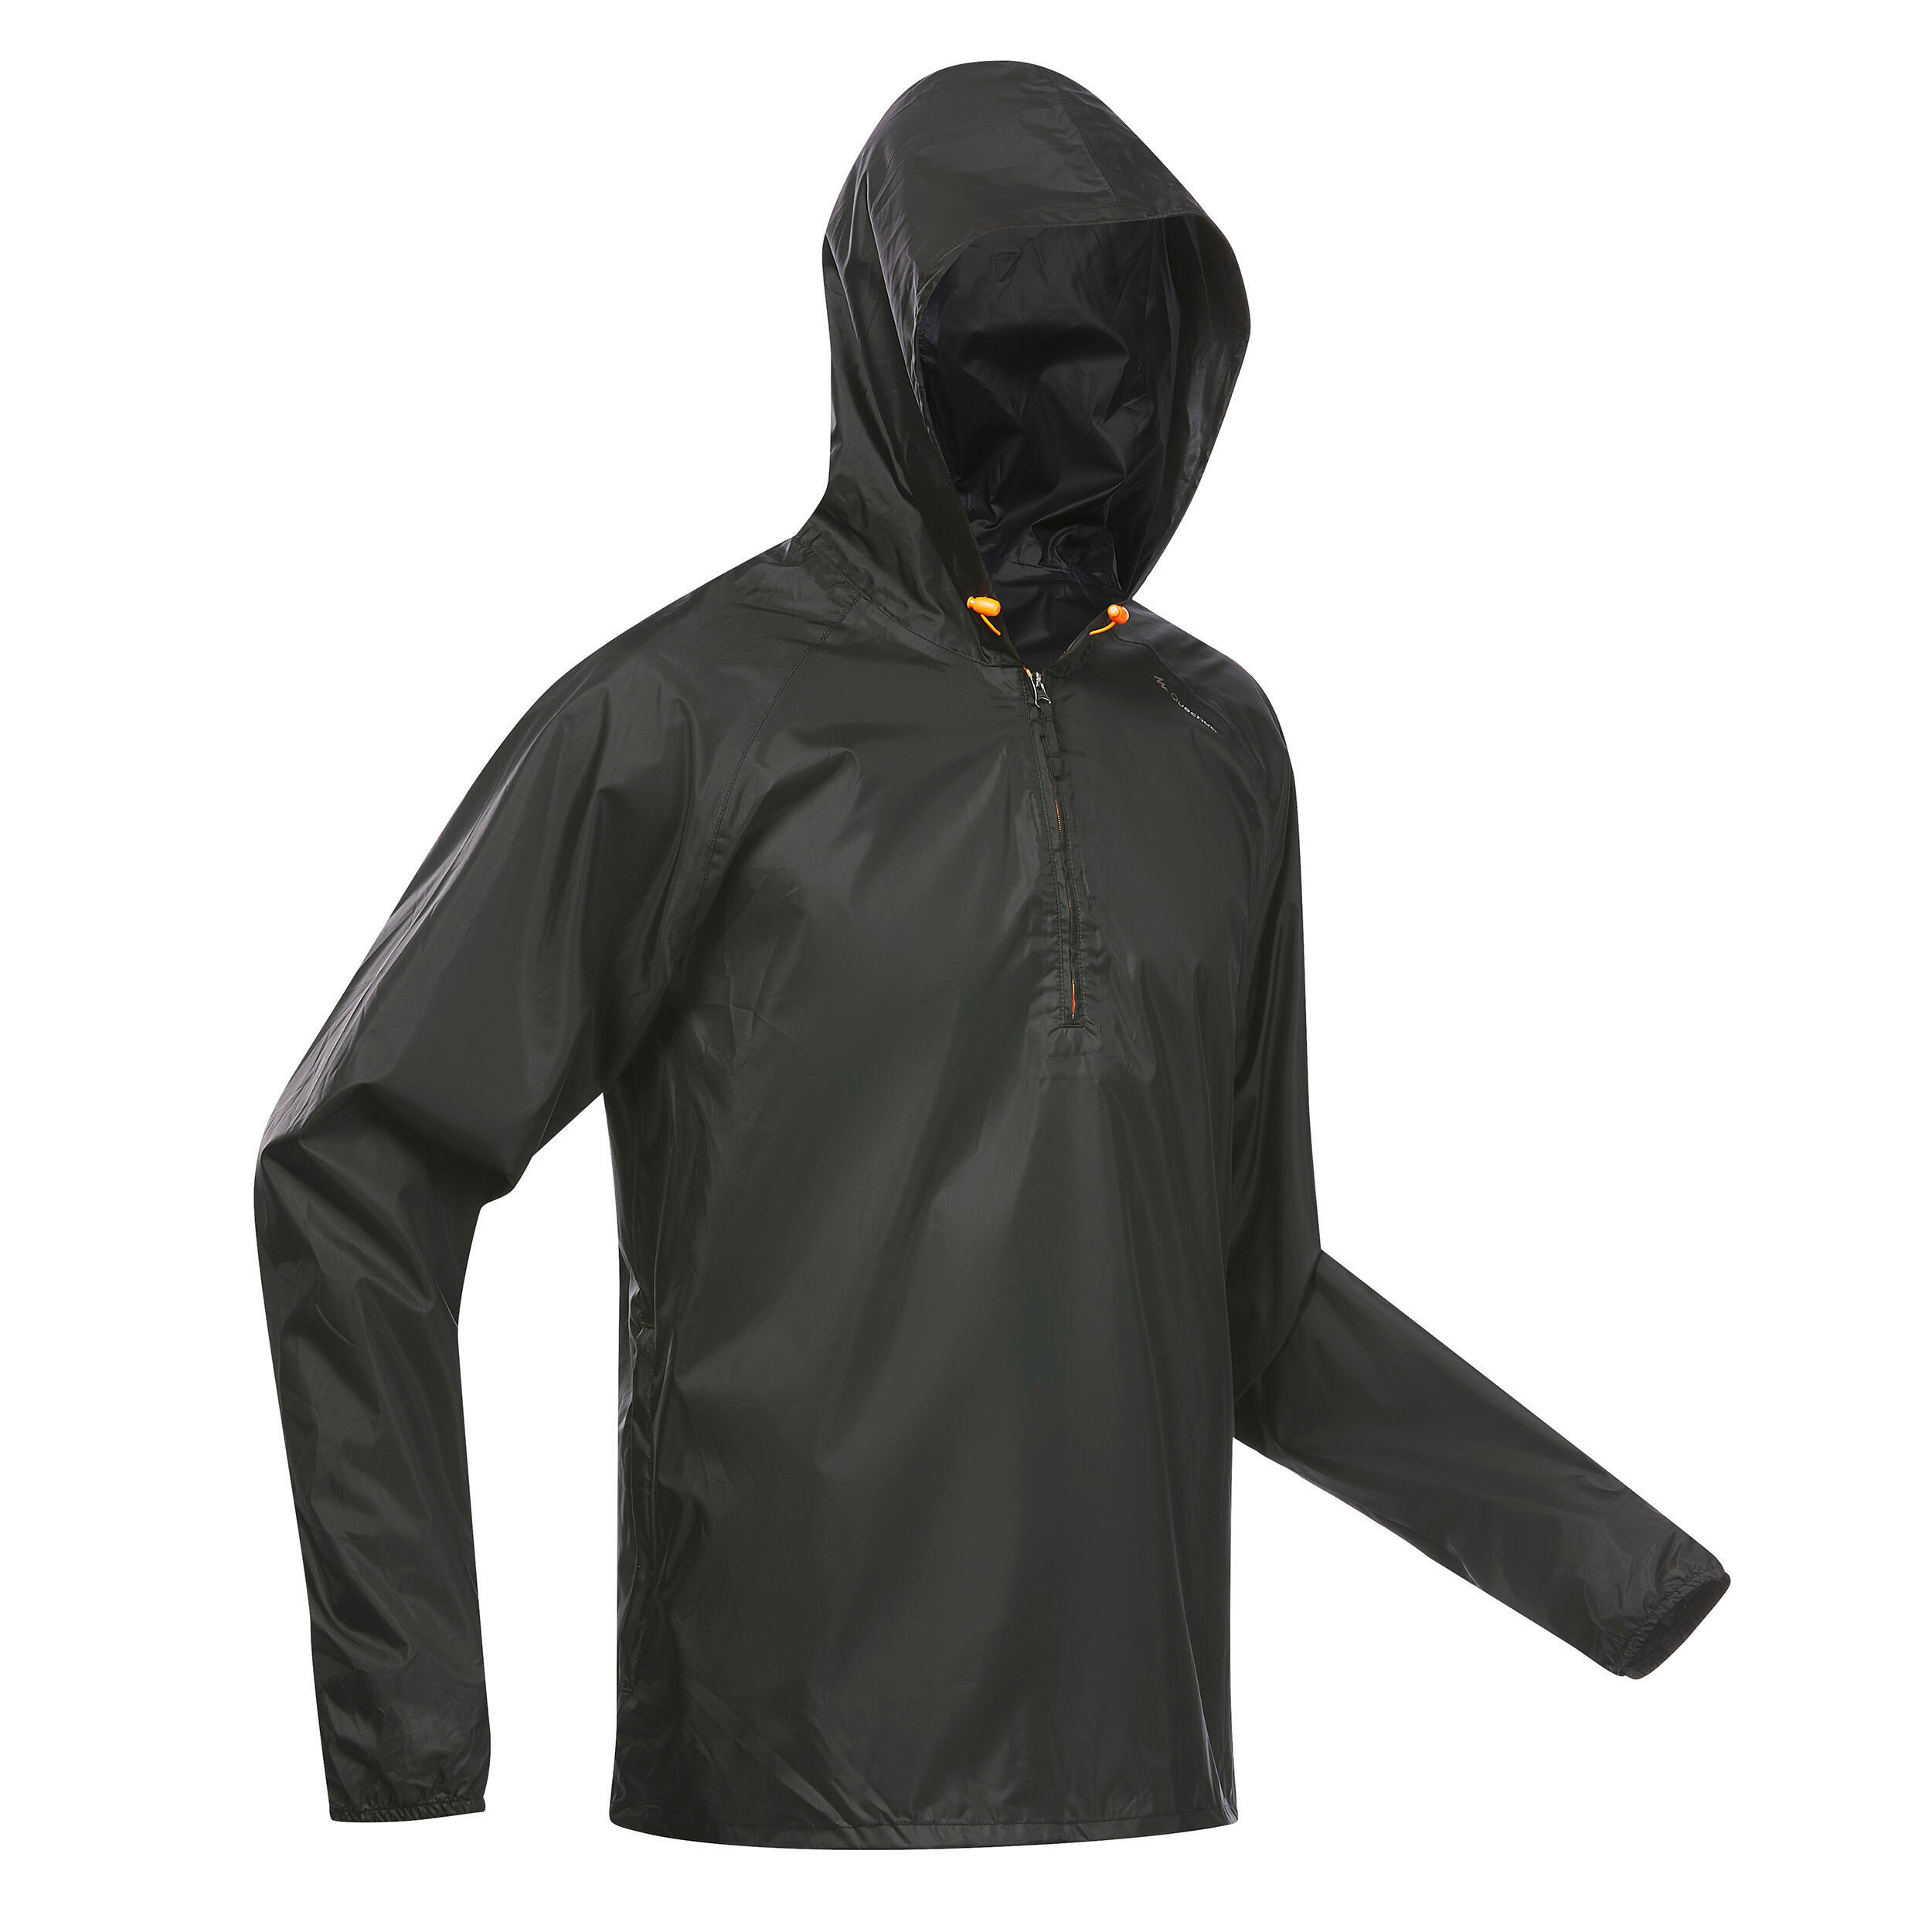 Men's Windproof and Water-repellent Hiking Jacket - Raincut 1/2 Zip 9/19